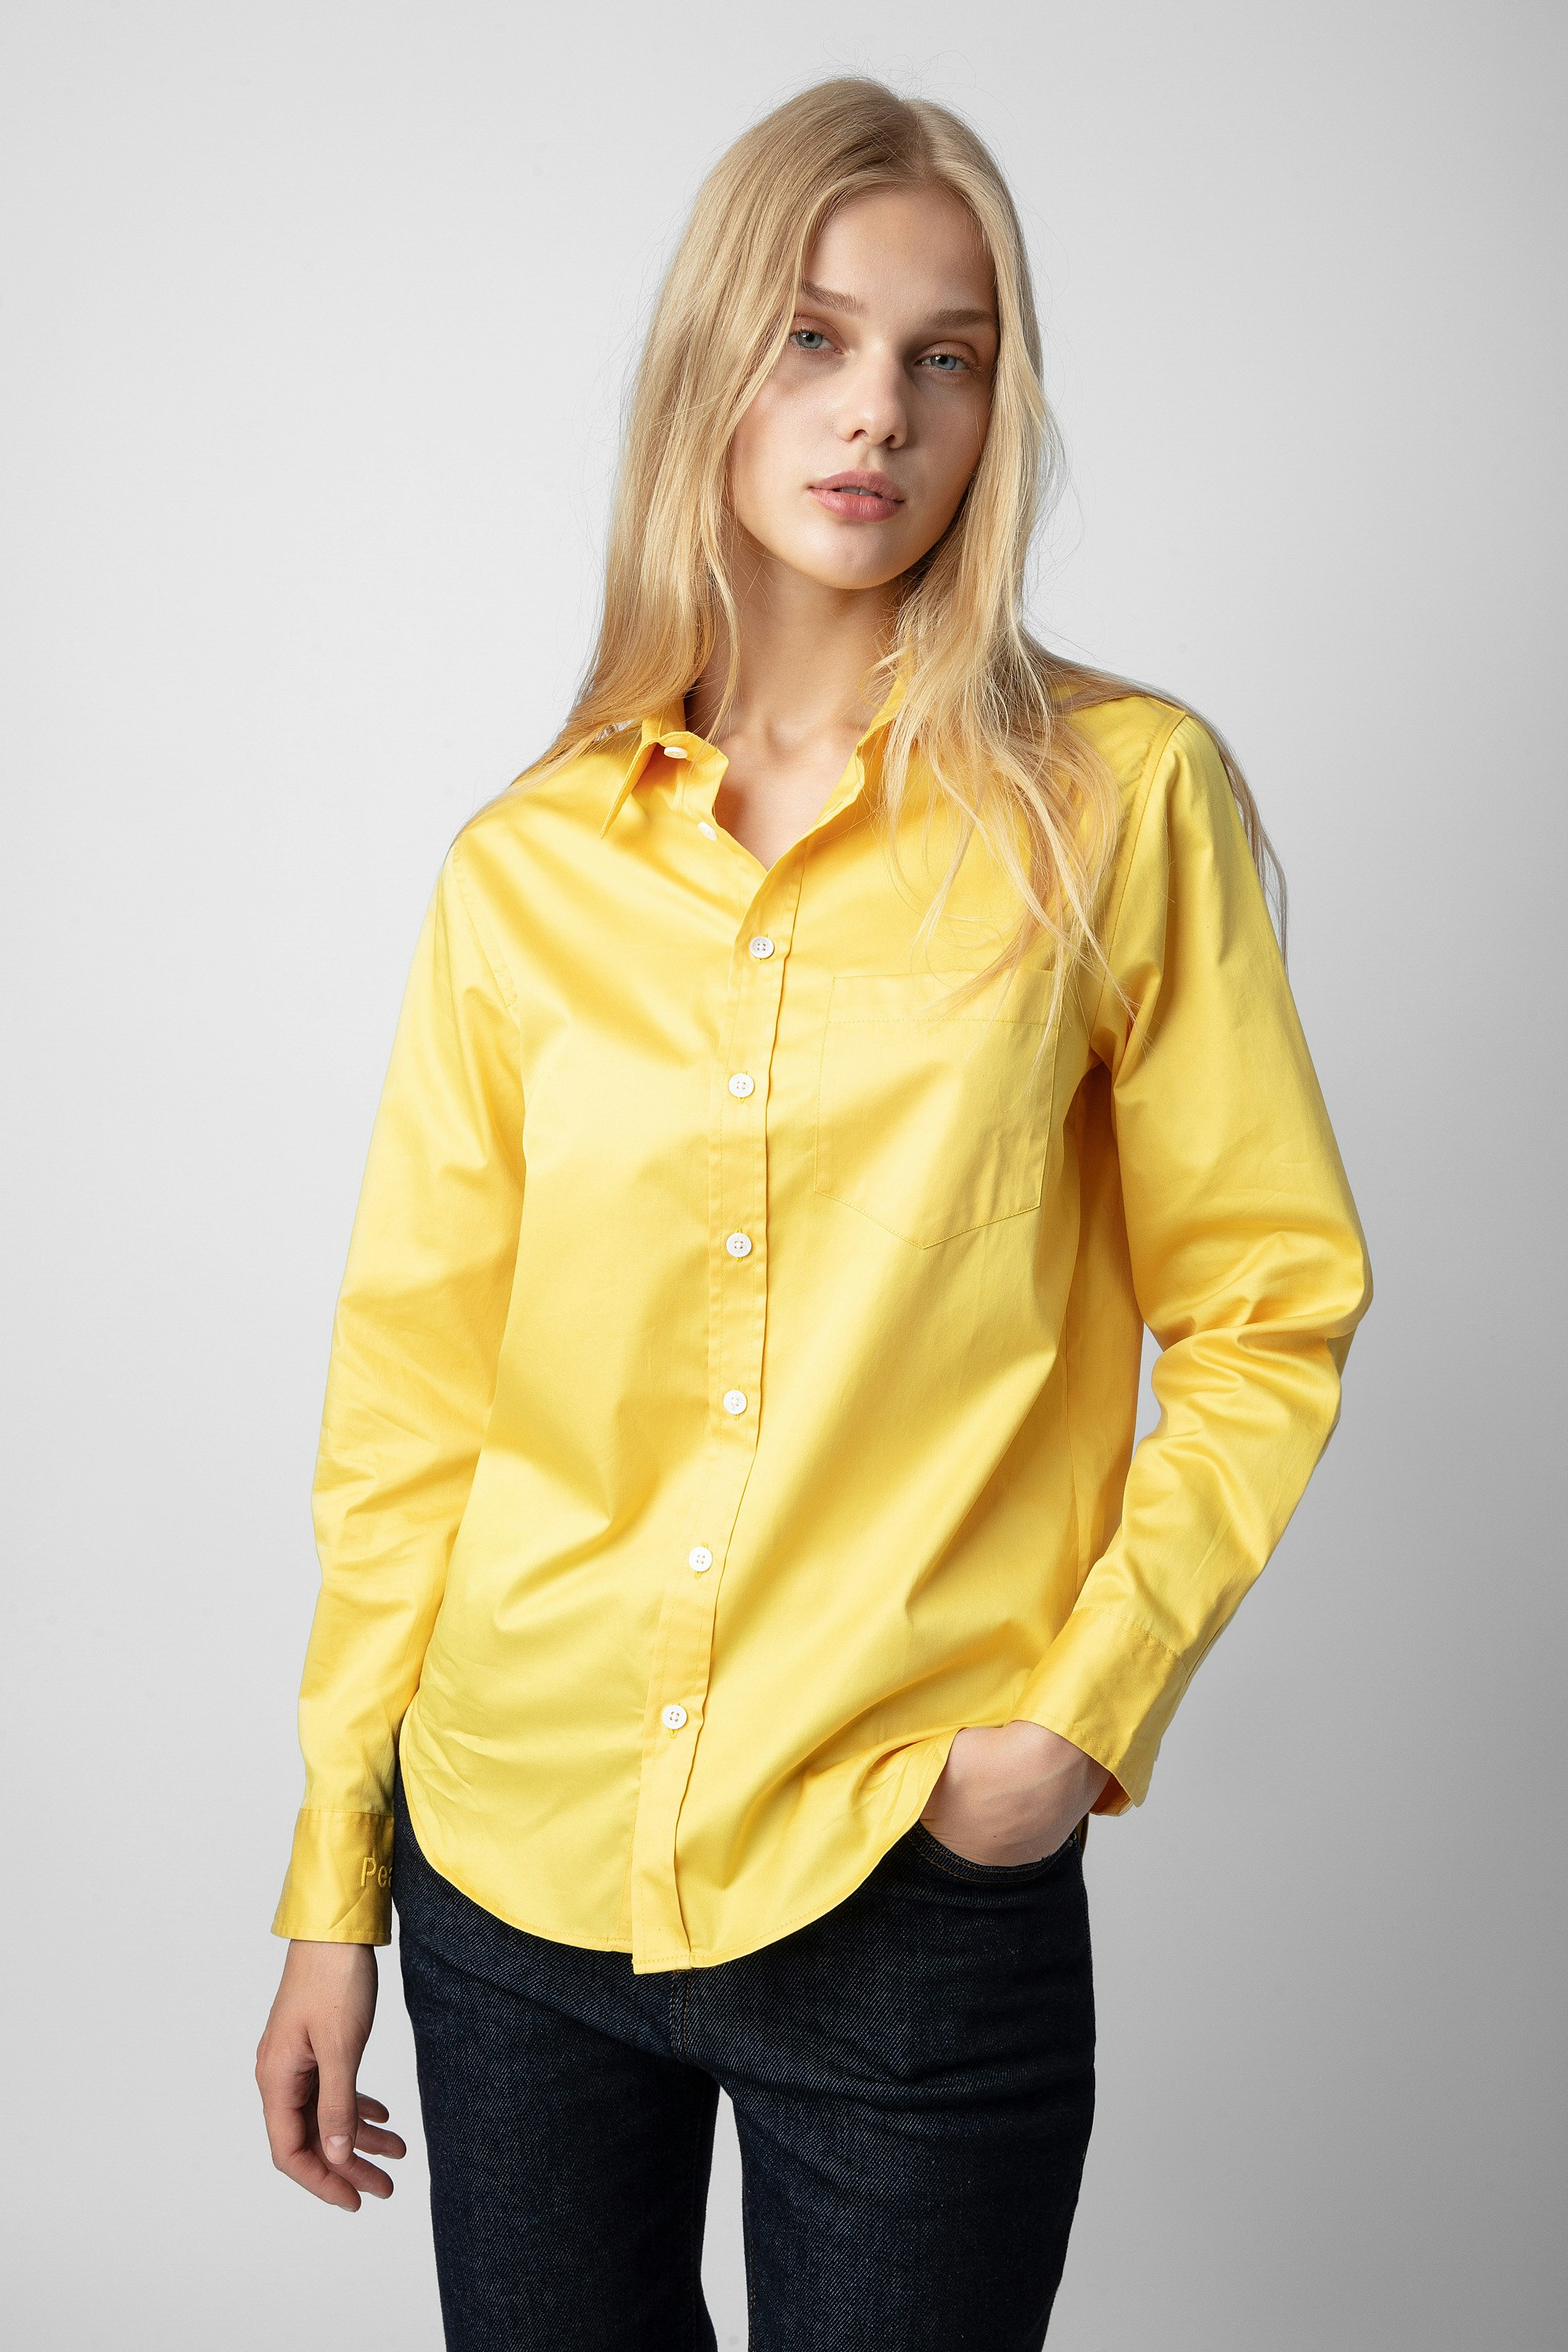 Camisa Taskiz - Camisa amarilla de algodón para mujer con bordado «Peace» en la manga izquierda.